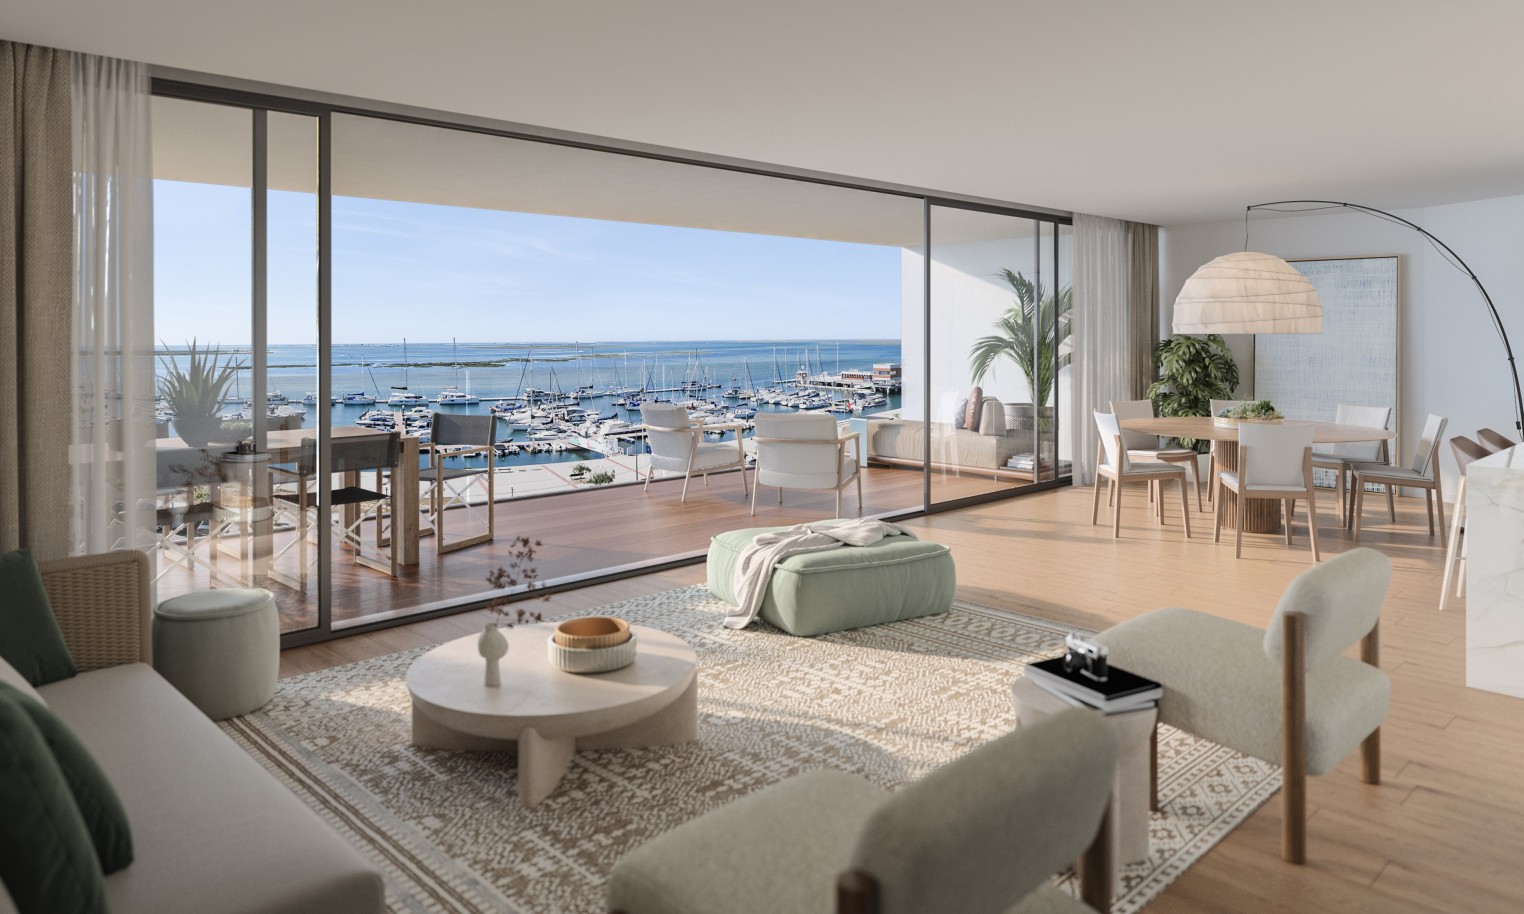 Appartements neufs avec vue sur mer, 1, 2 & 3 chambres, à vendre à Olhão, Algarve_243873